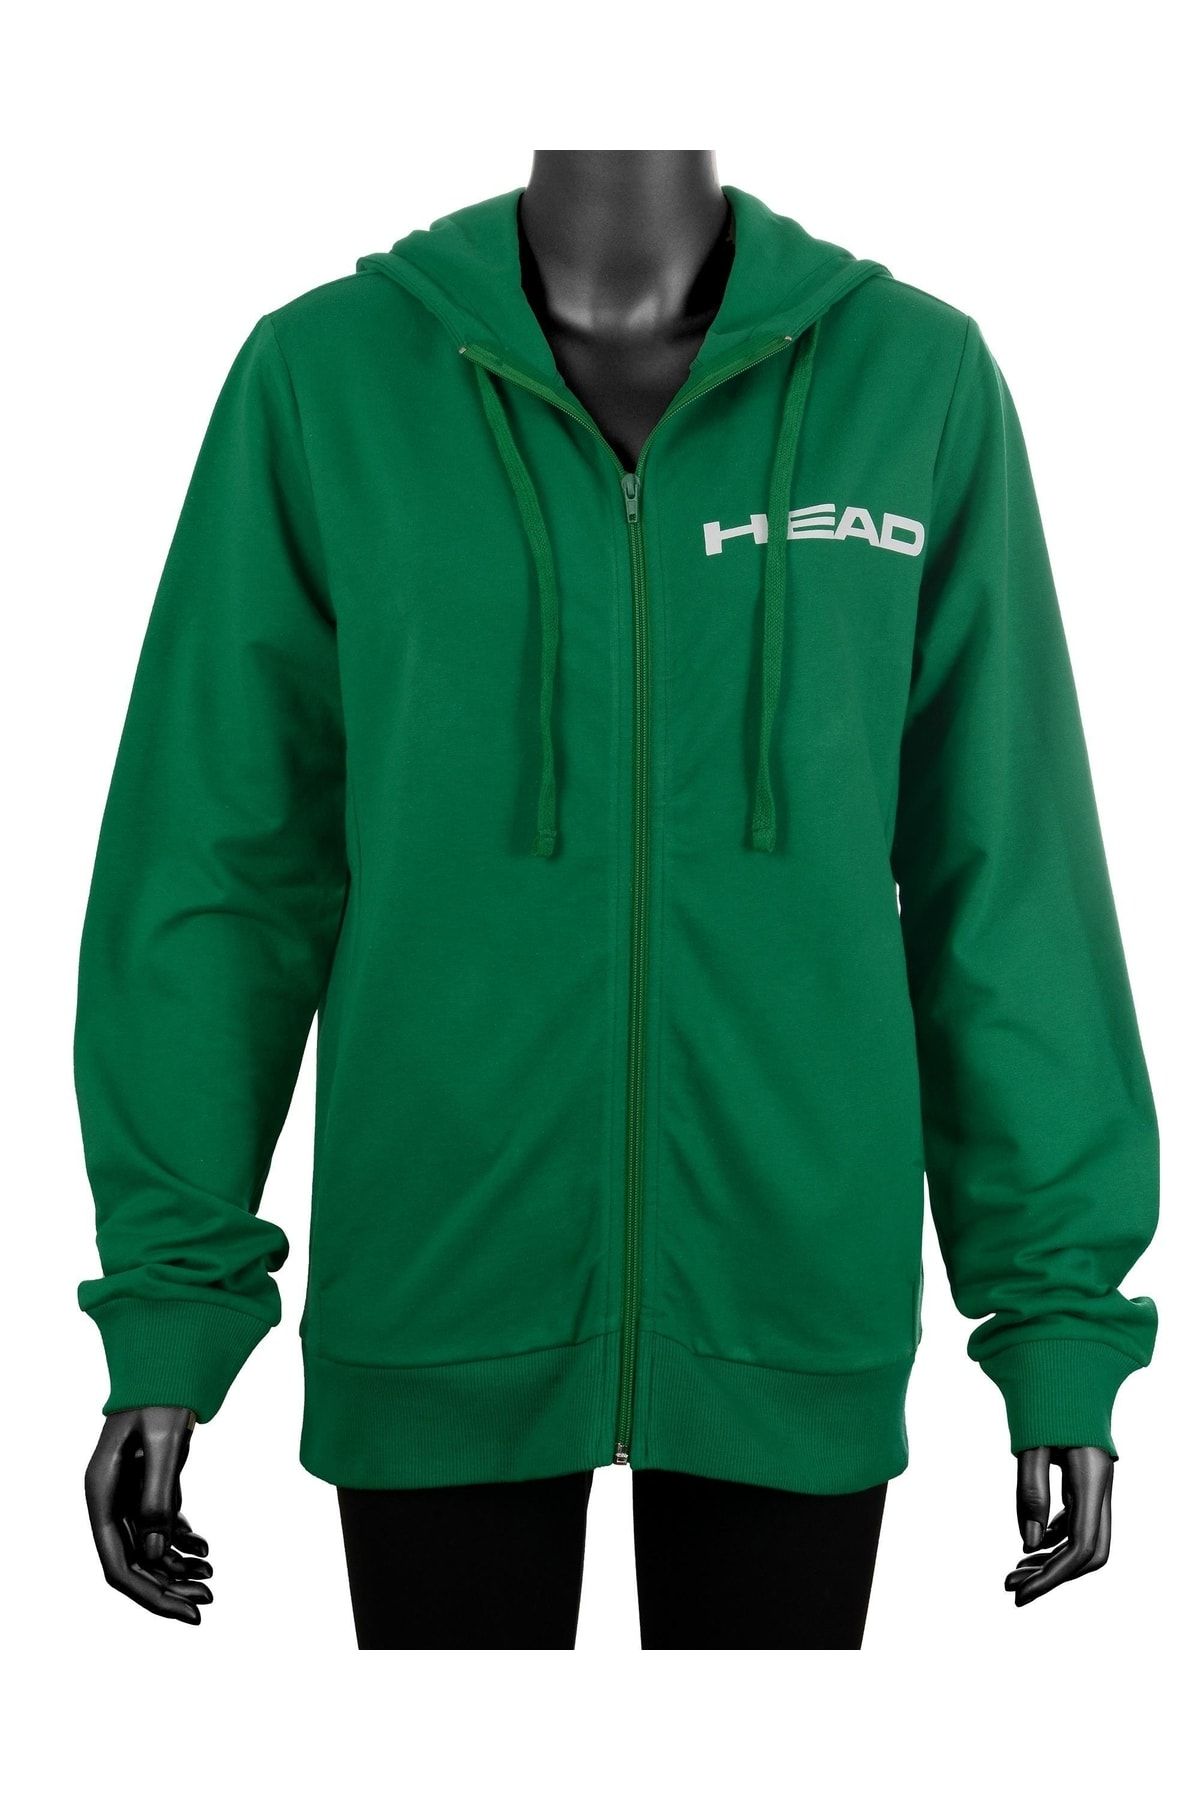 Head Kadın Koyu Yeşil Fermuarlı Kapüşonlu Mevsimlik Cardigan Hoodie Eşofman Üstü Sweatshirt